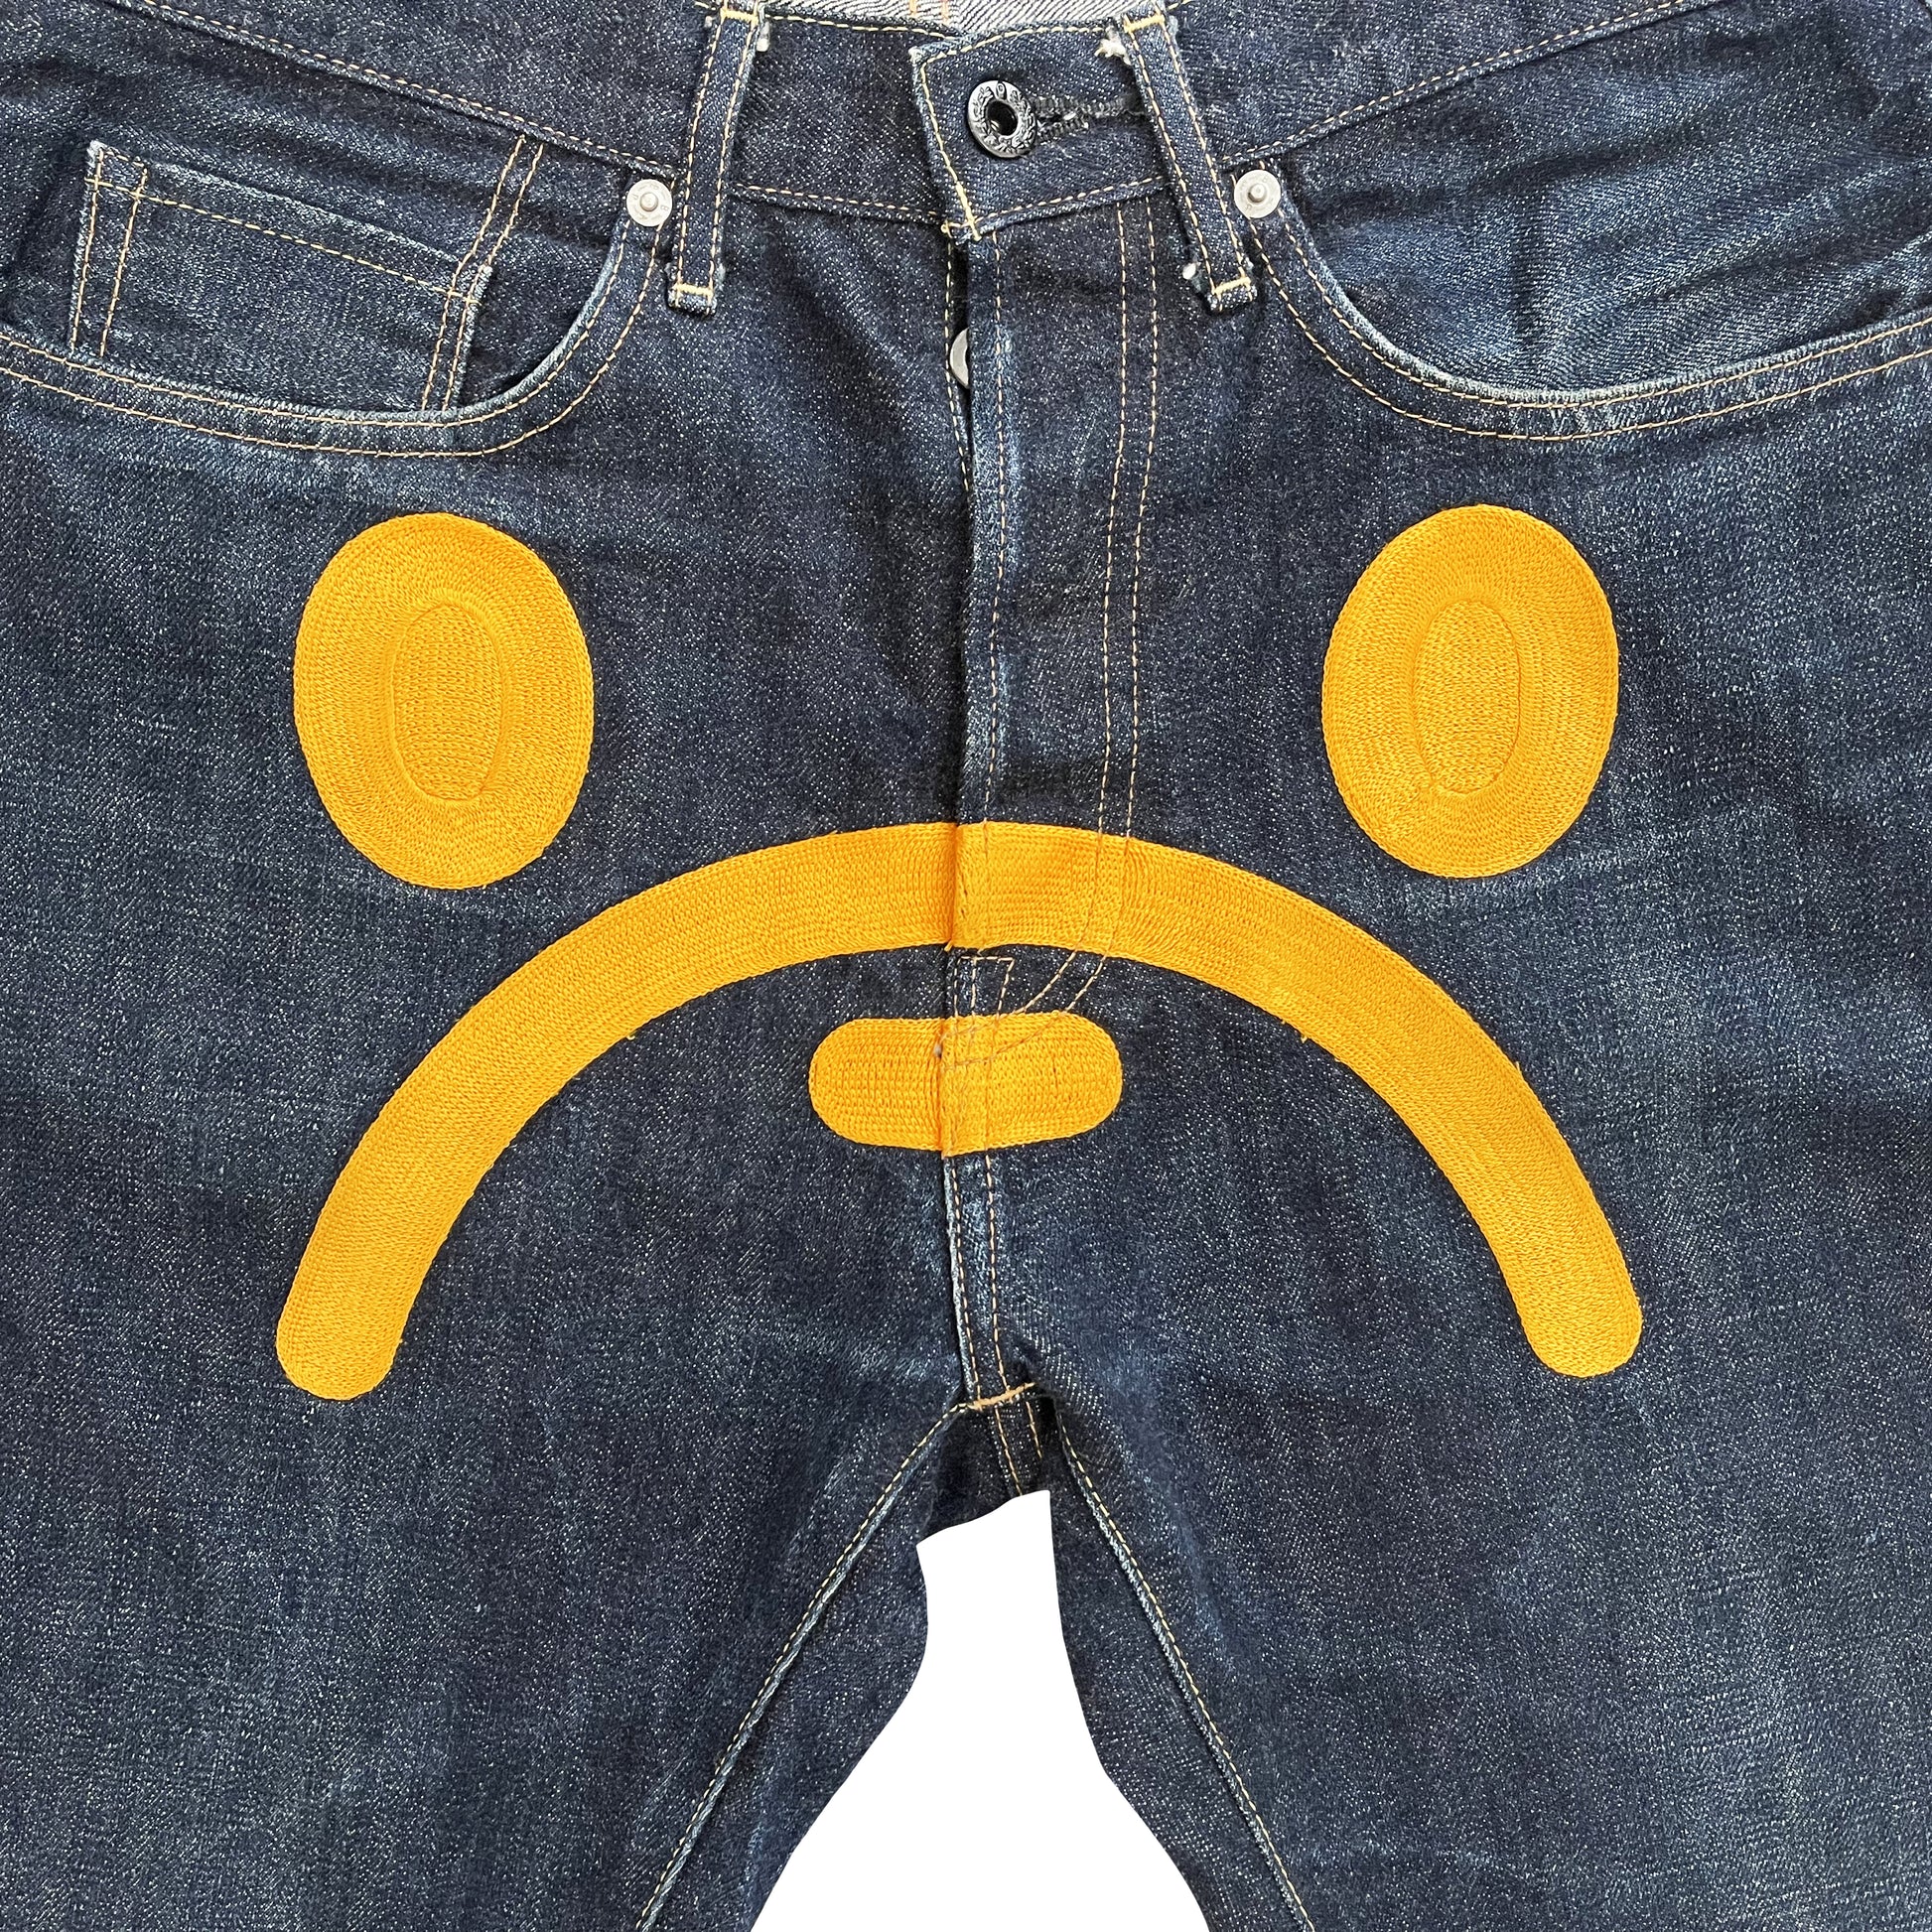 Bape Sad Face Jeans